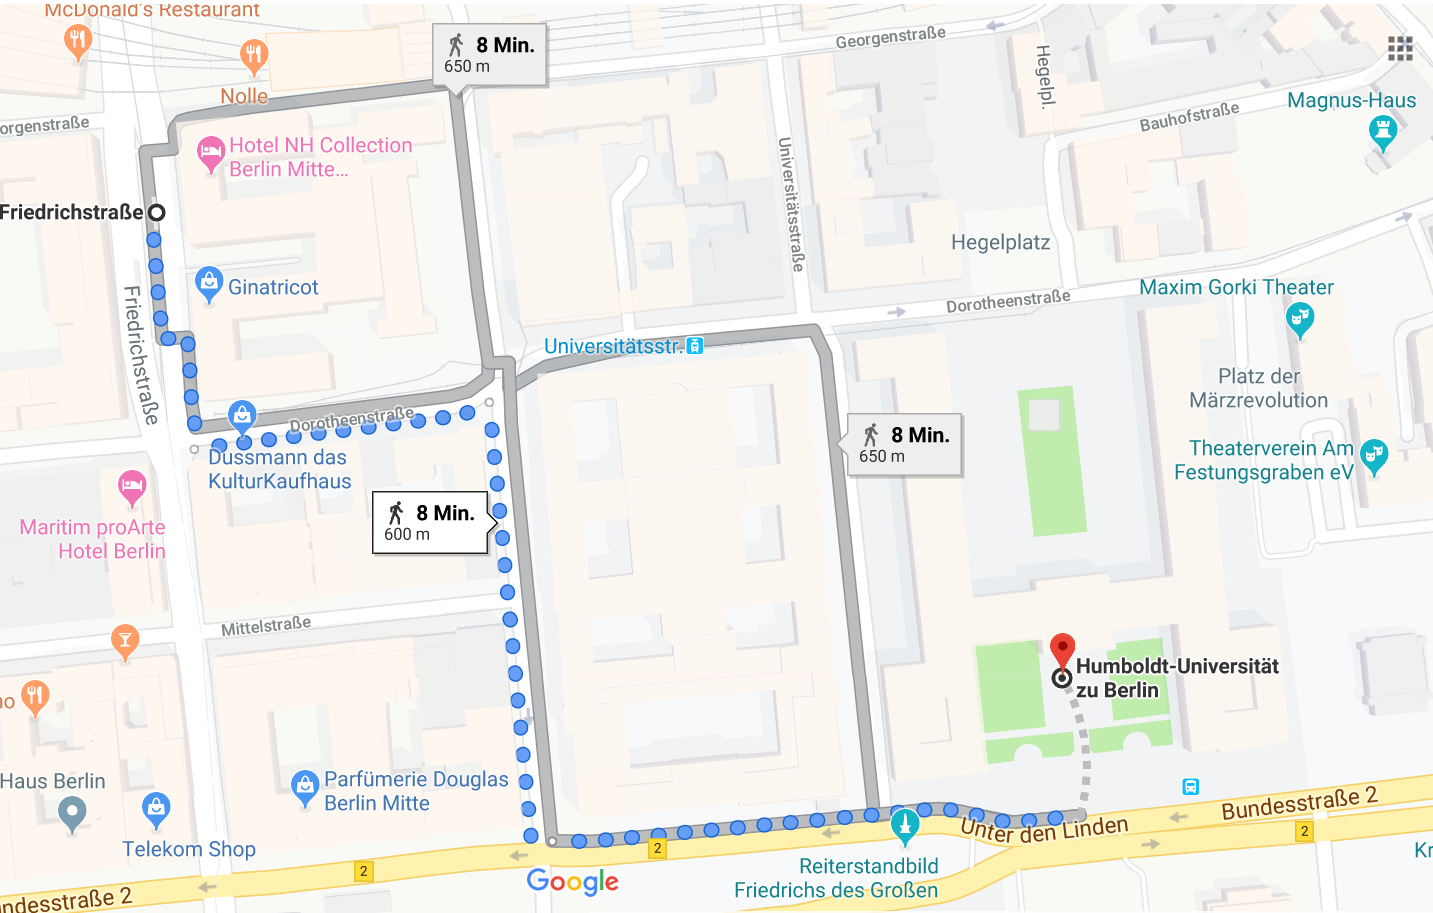 Kartenausschnitt zur Beschreibung des Fußwegs, Quelle: Google Maps